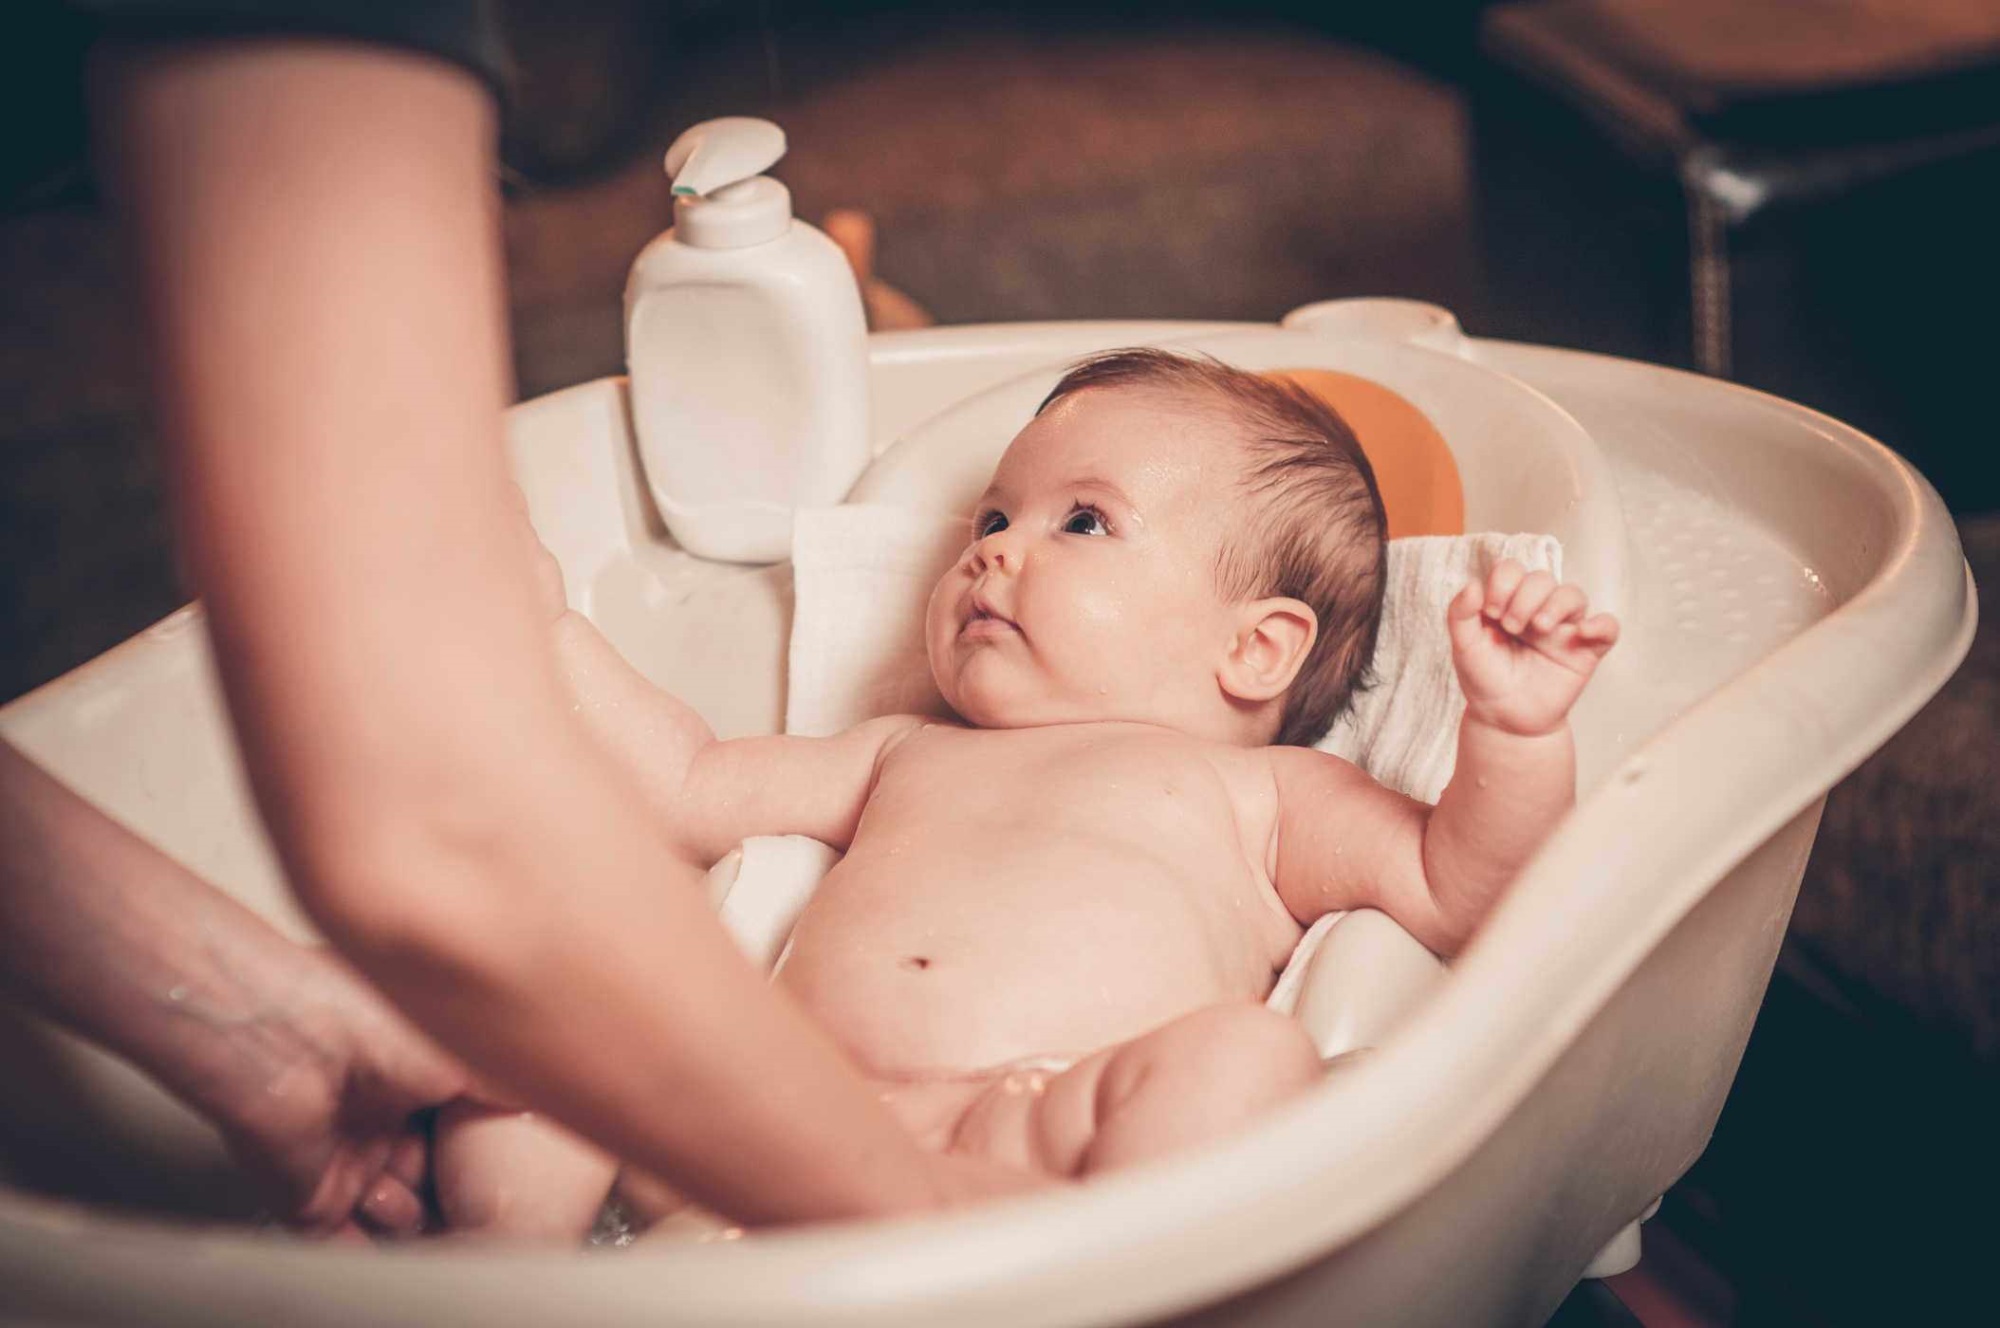 Chi tiết tắm đúng cách cho trẻ sơ sinh và những lưu ý mẹ phải nhớ - Ảnh 1